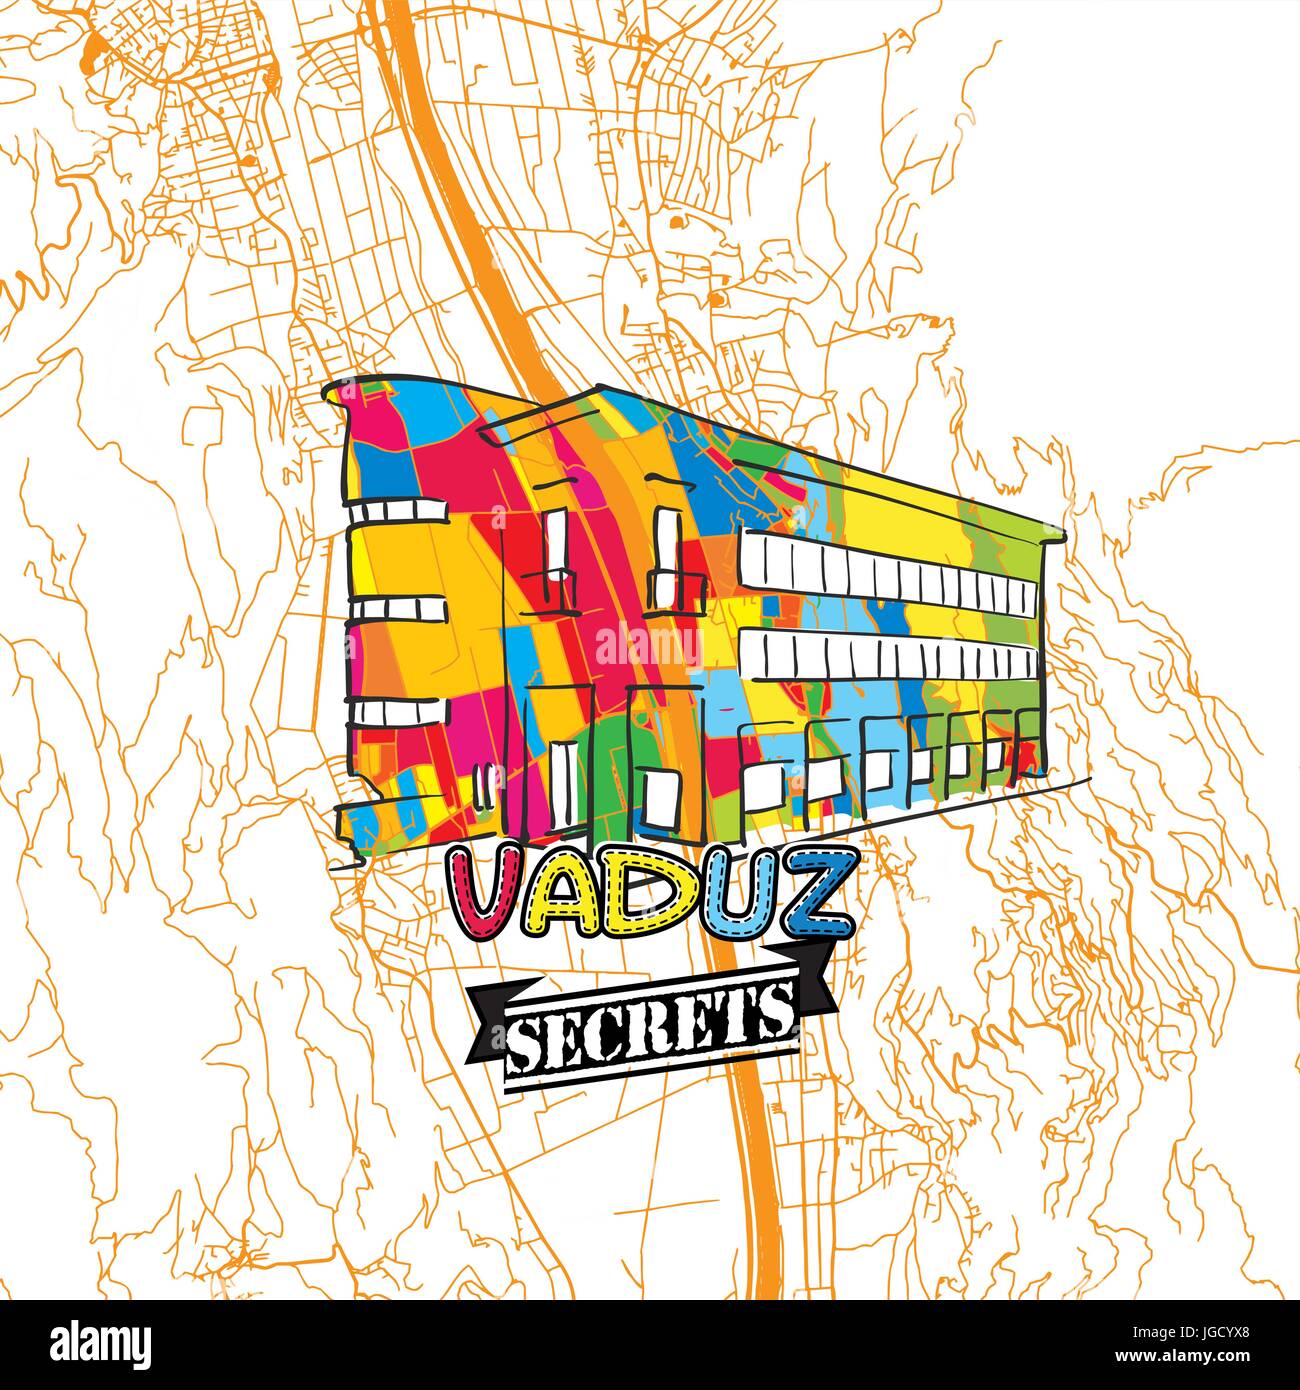 Voyage Vaduz Art Secrets Site pour la cartographie des experts et des guides de voyage. Le logo de la ville à la main, typo de badge et dessinés à la main sur le dessus de l'image vectorielle sont regroupés et Illustration de Vecteur